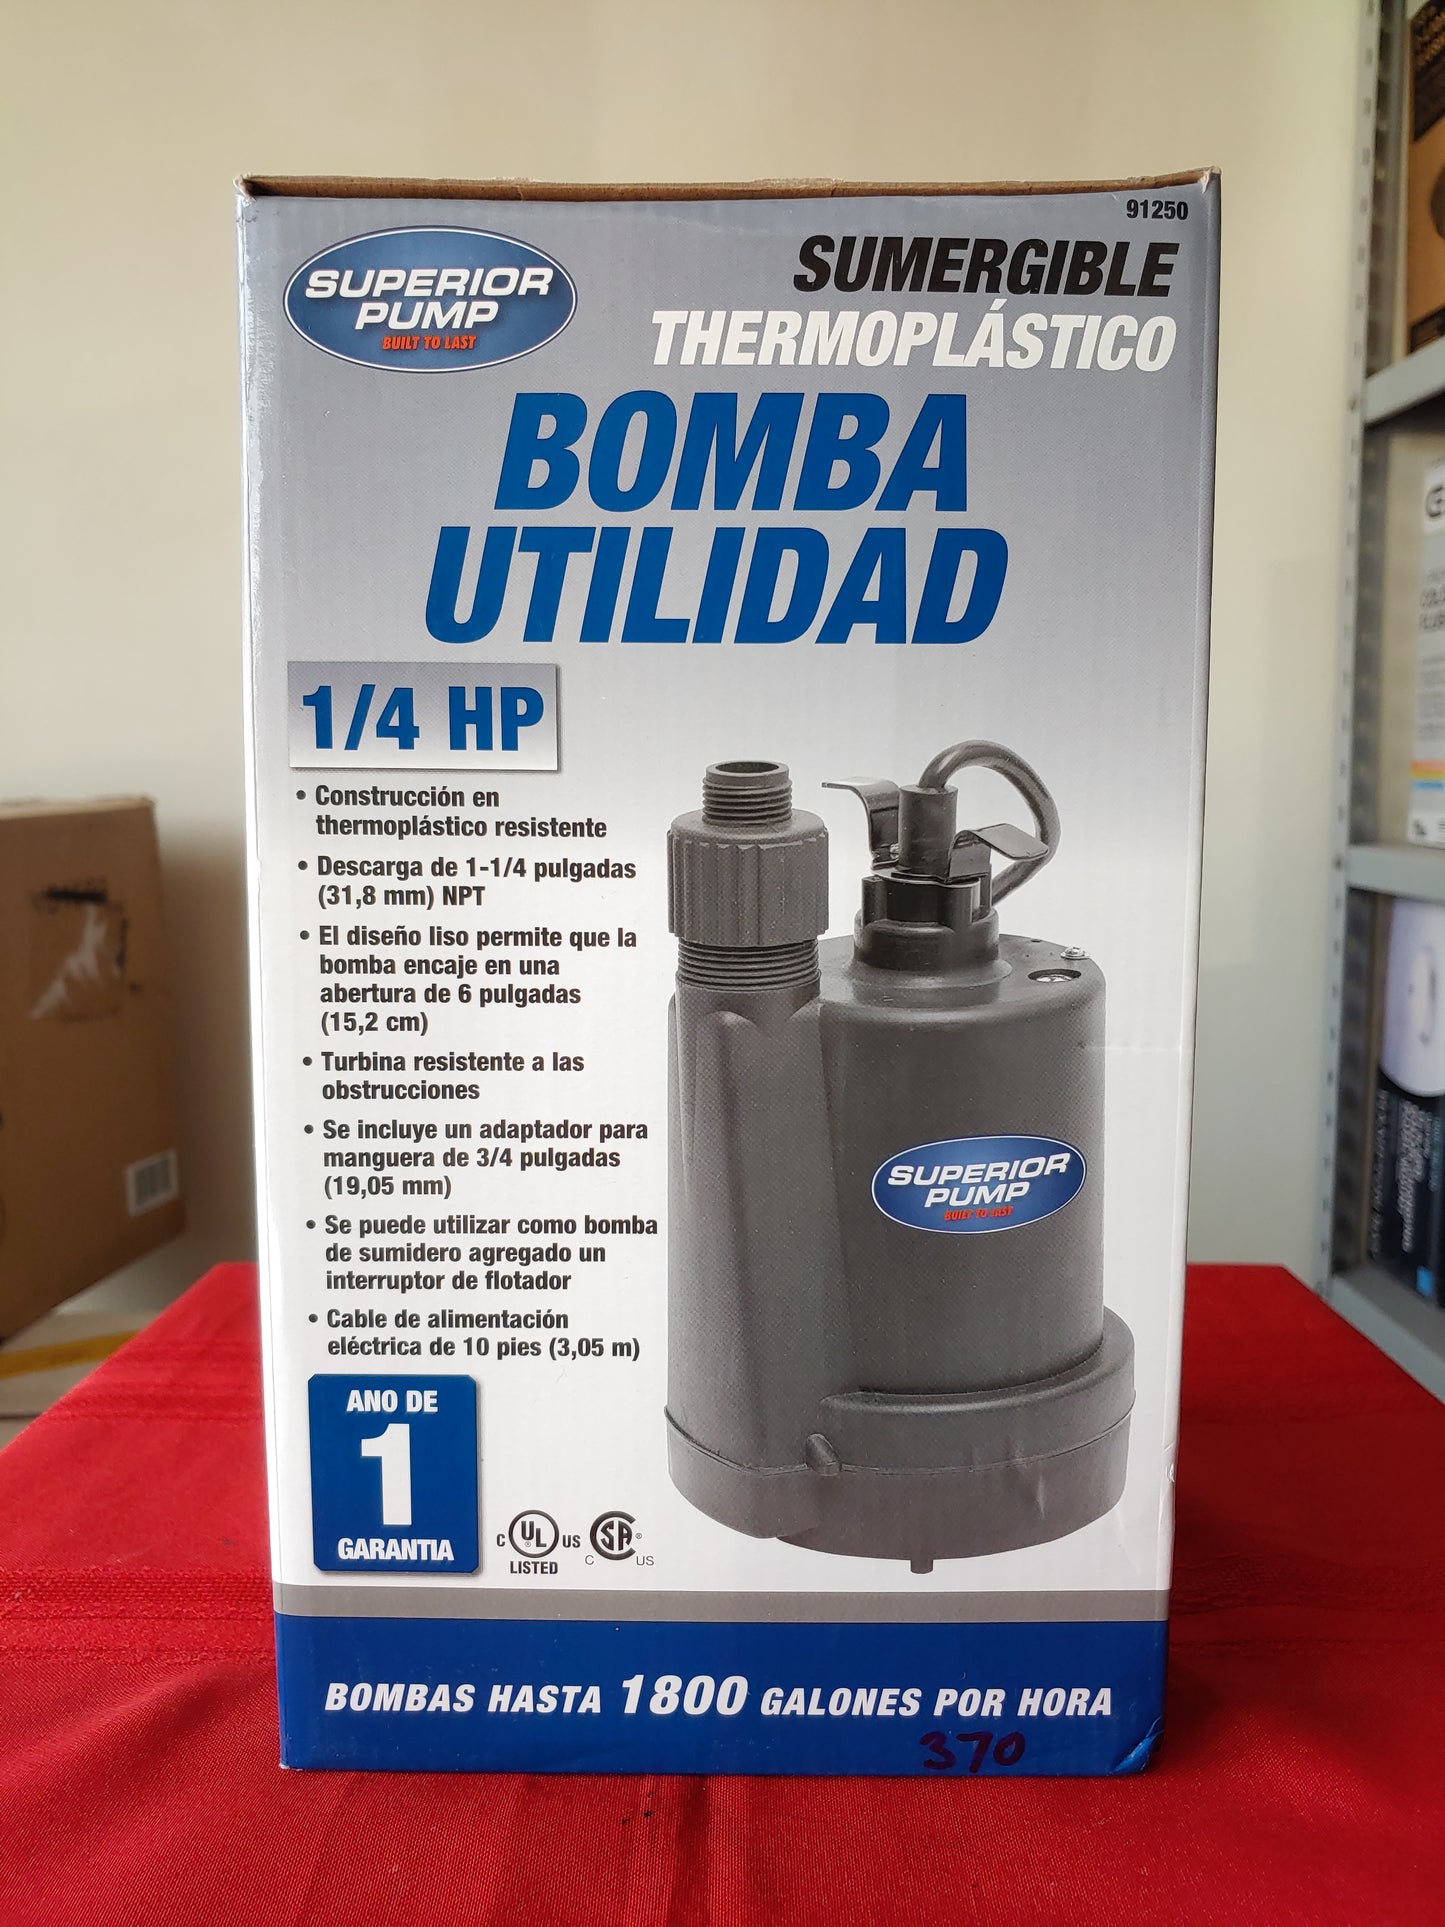 Bomba sumergible portátil de uso general 1/4 HP - Superior Pump (Nuevo, caja abierta)